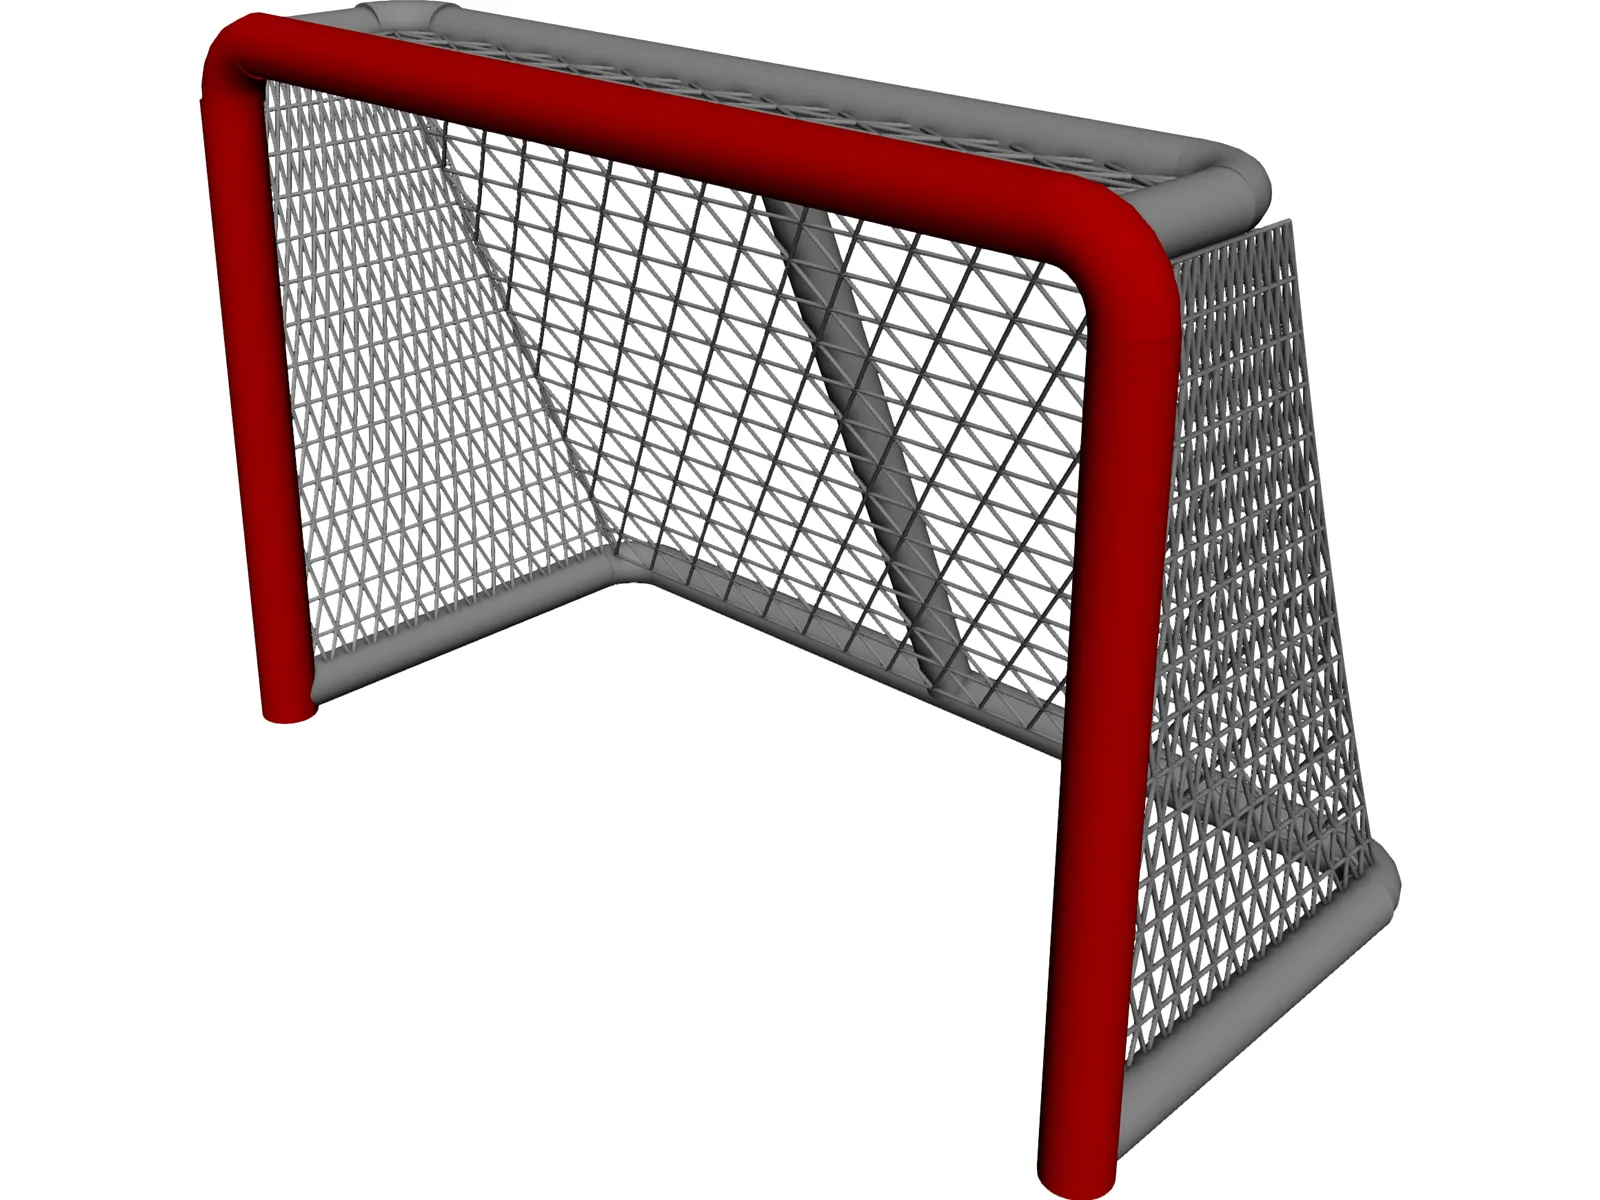 Hockey Goal 3D Model